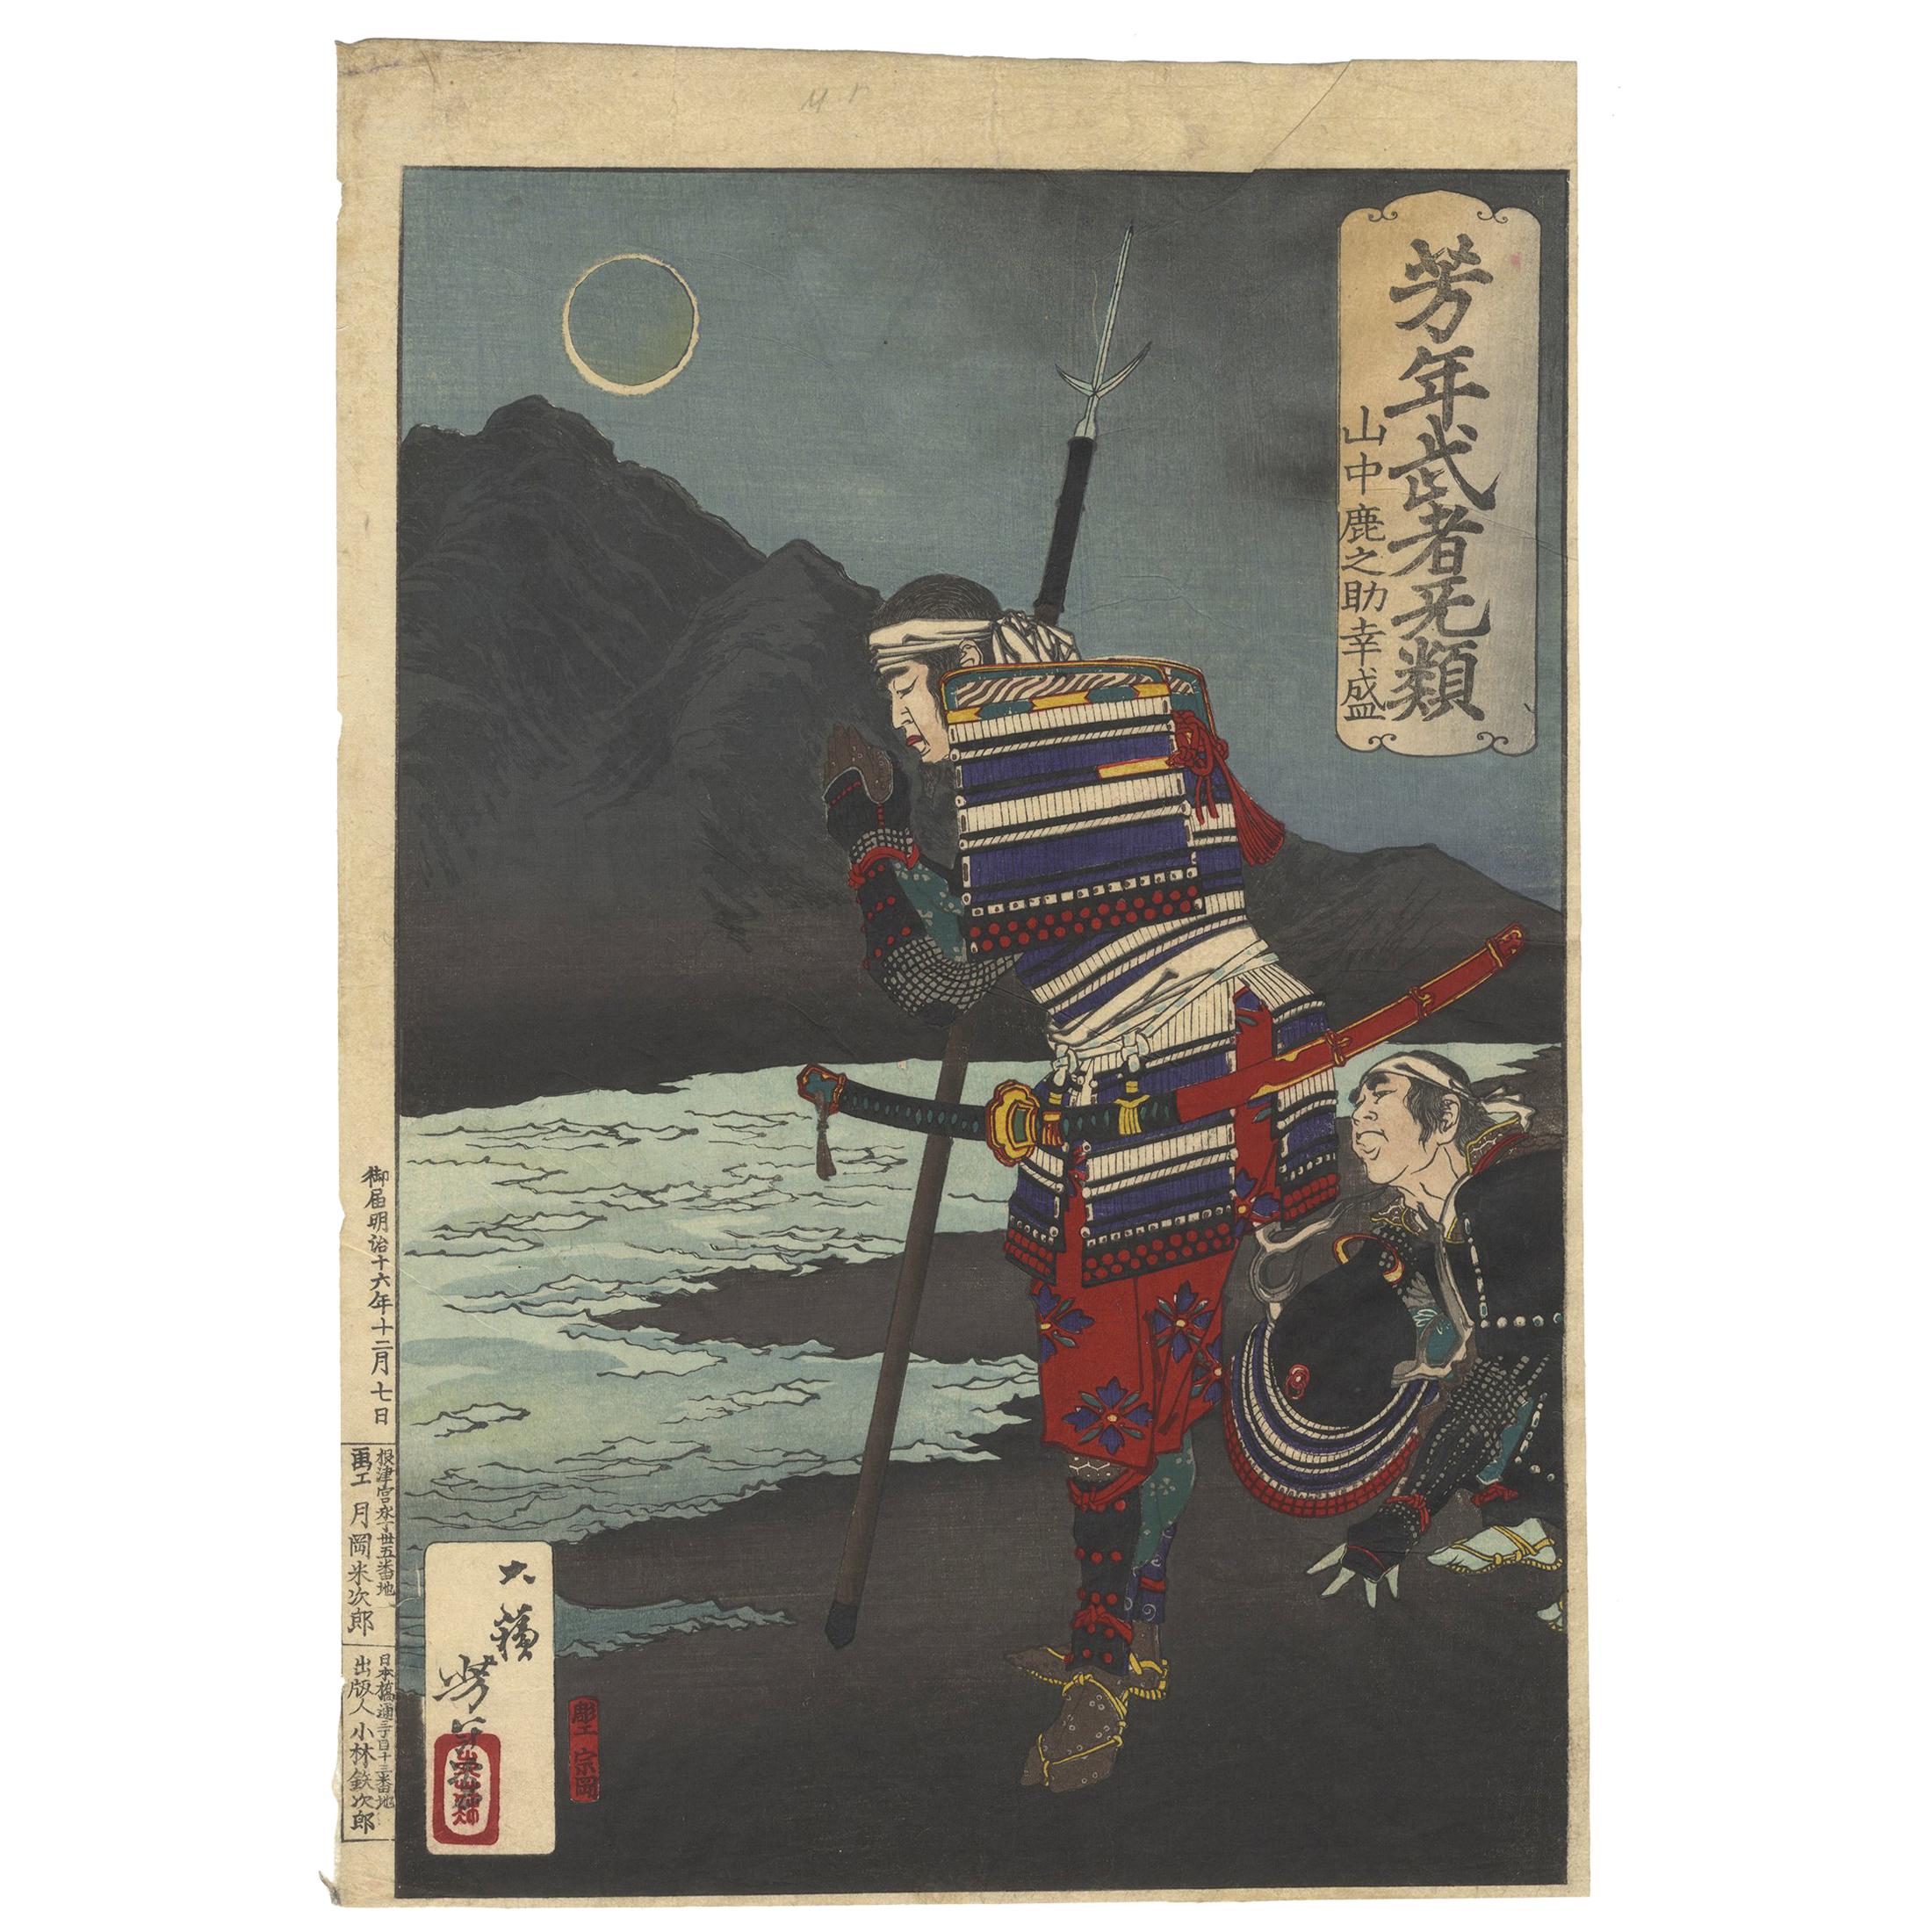 Yoshitoshi, Original Japanese Woodblock Print, Moon, Samurai, River, Ukiyo-e Art For Sale